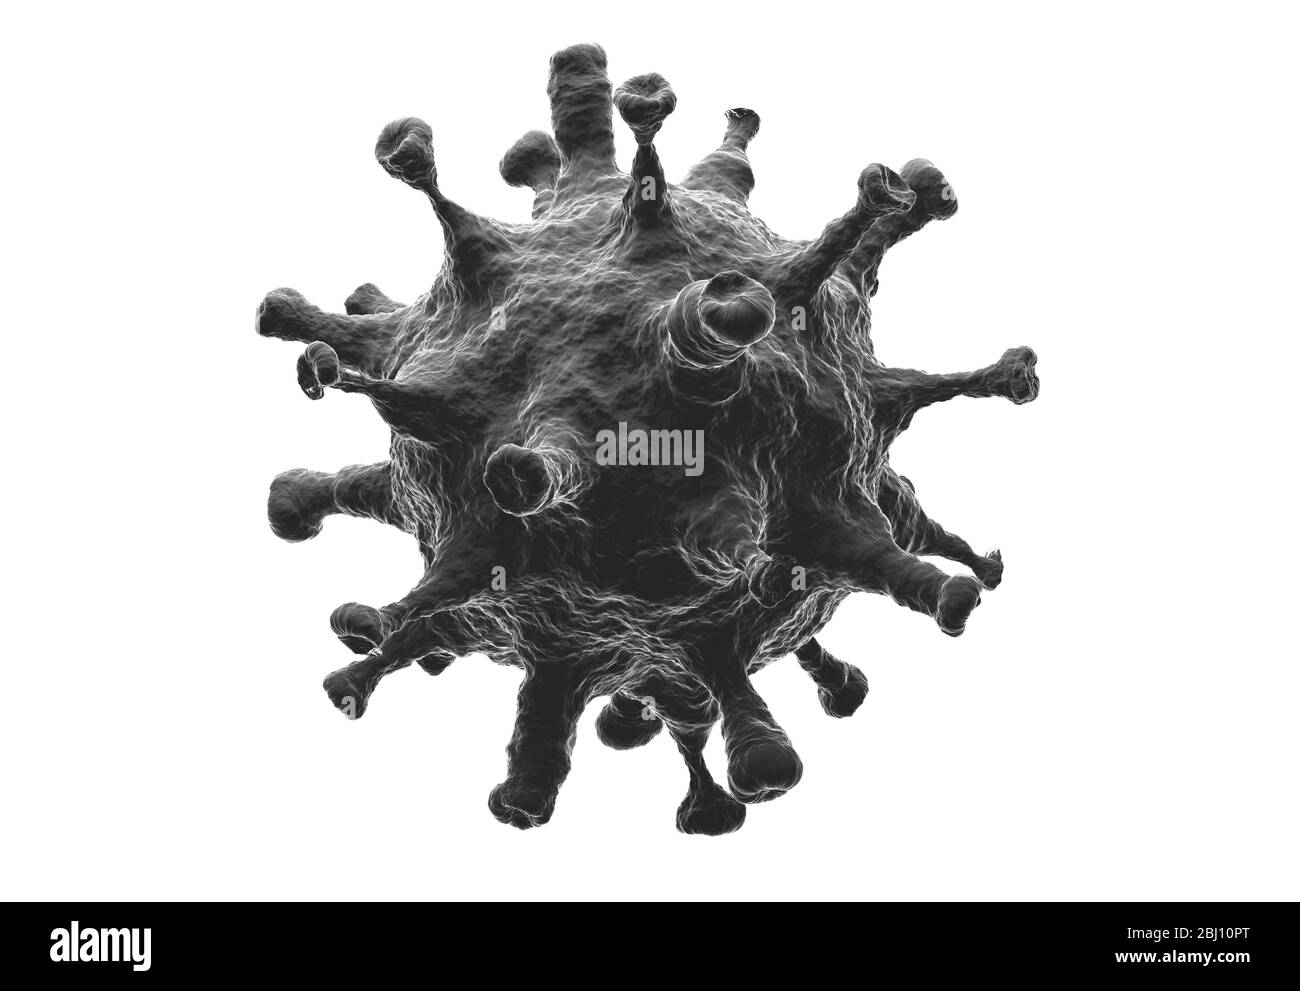 Cellule della malattia di coronavirus, rappresentazione 3D immagine ingrandita di una cellula virale nuovo 2019 cellula di focolaio di infezione da germe di Coronavirus (COVID-19) patogeno w Foto Stock